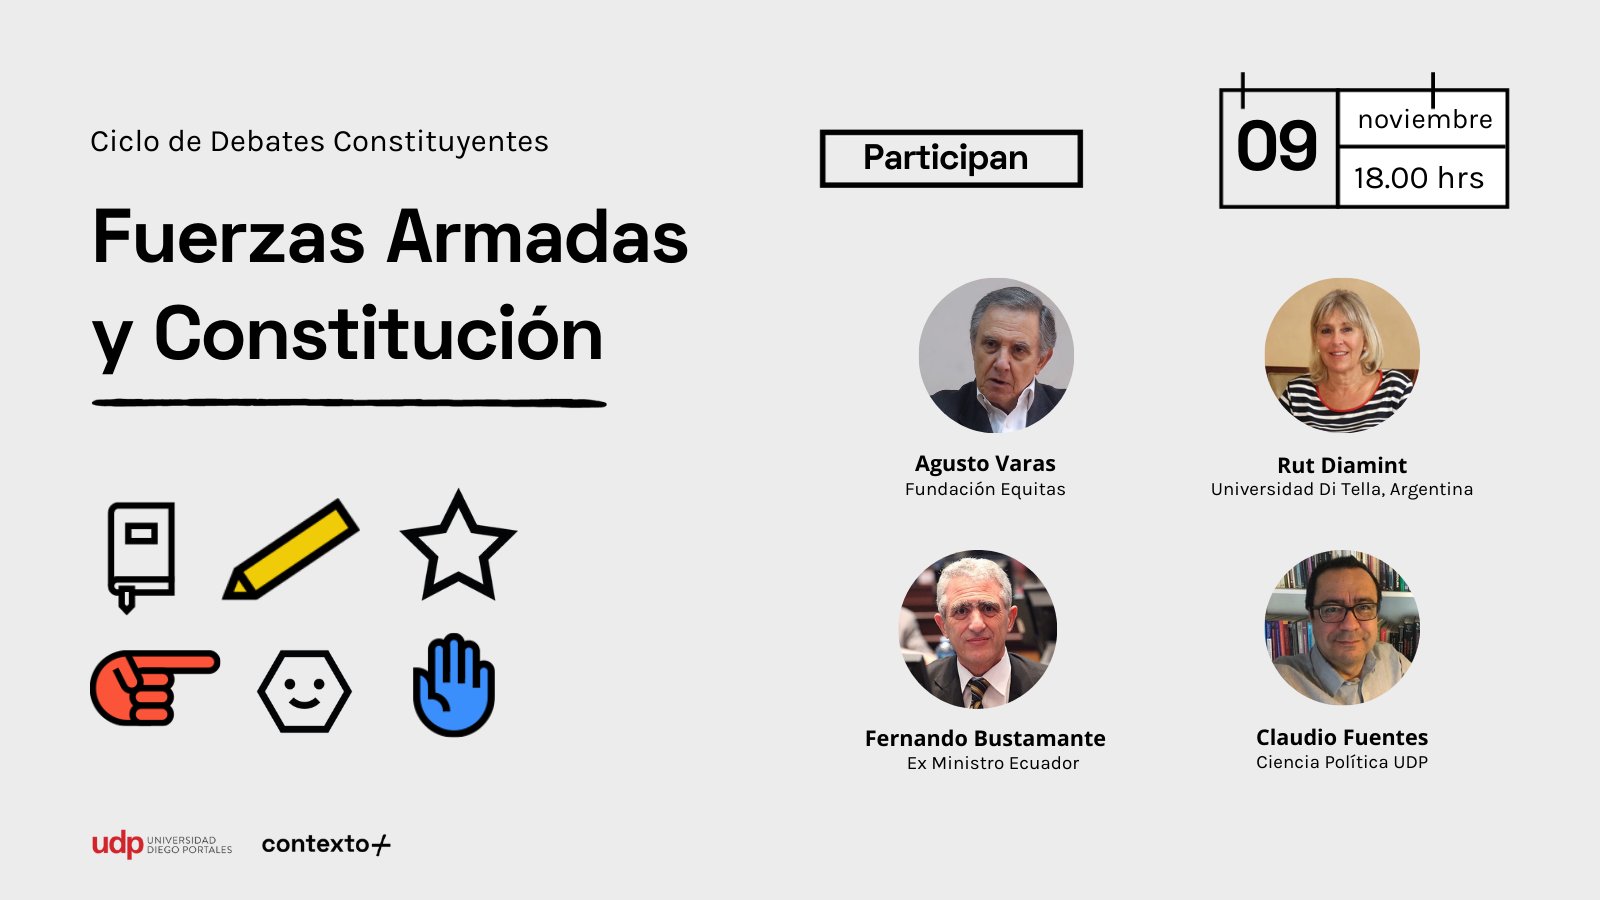 Plataforma Contexto invita al debate: “Fuerzas Armadas y Constitución”